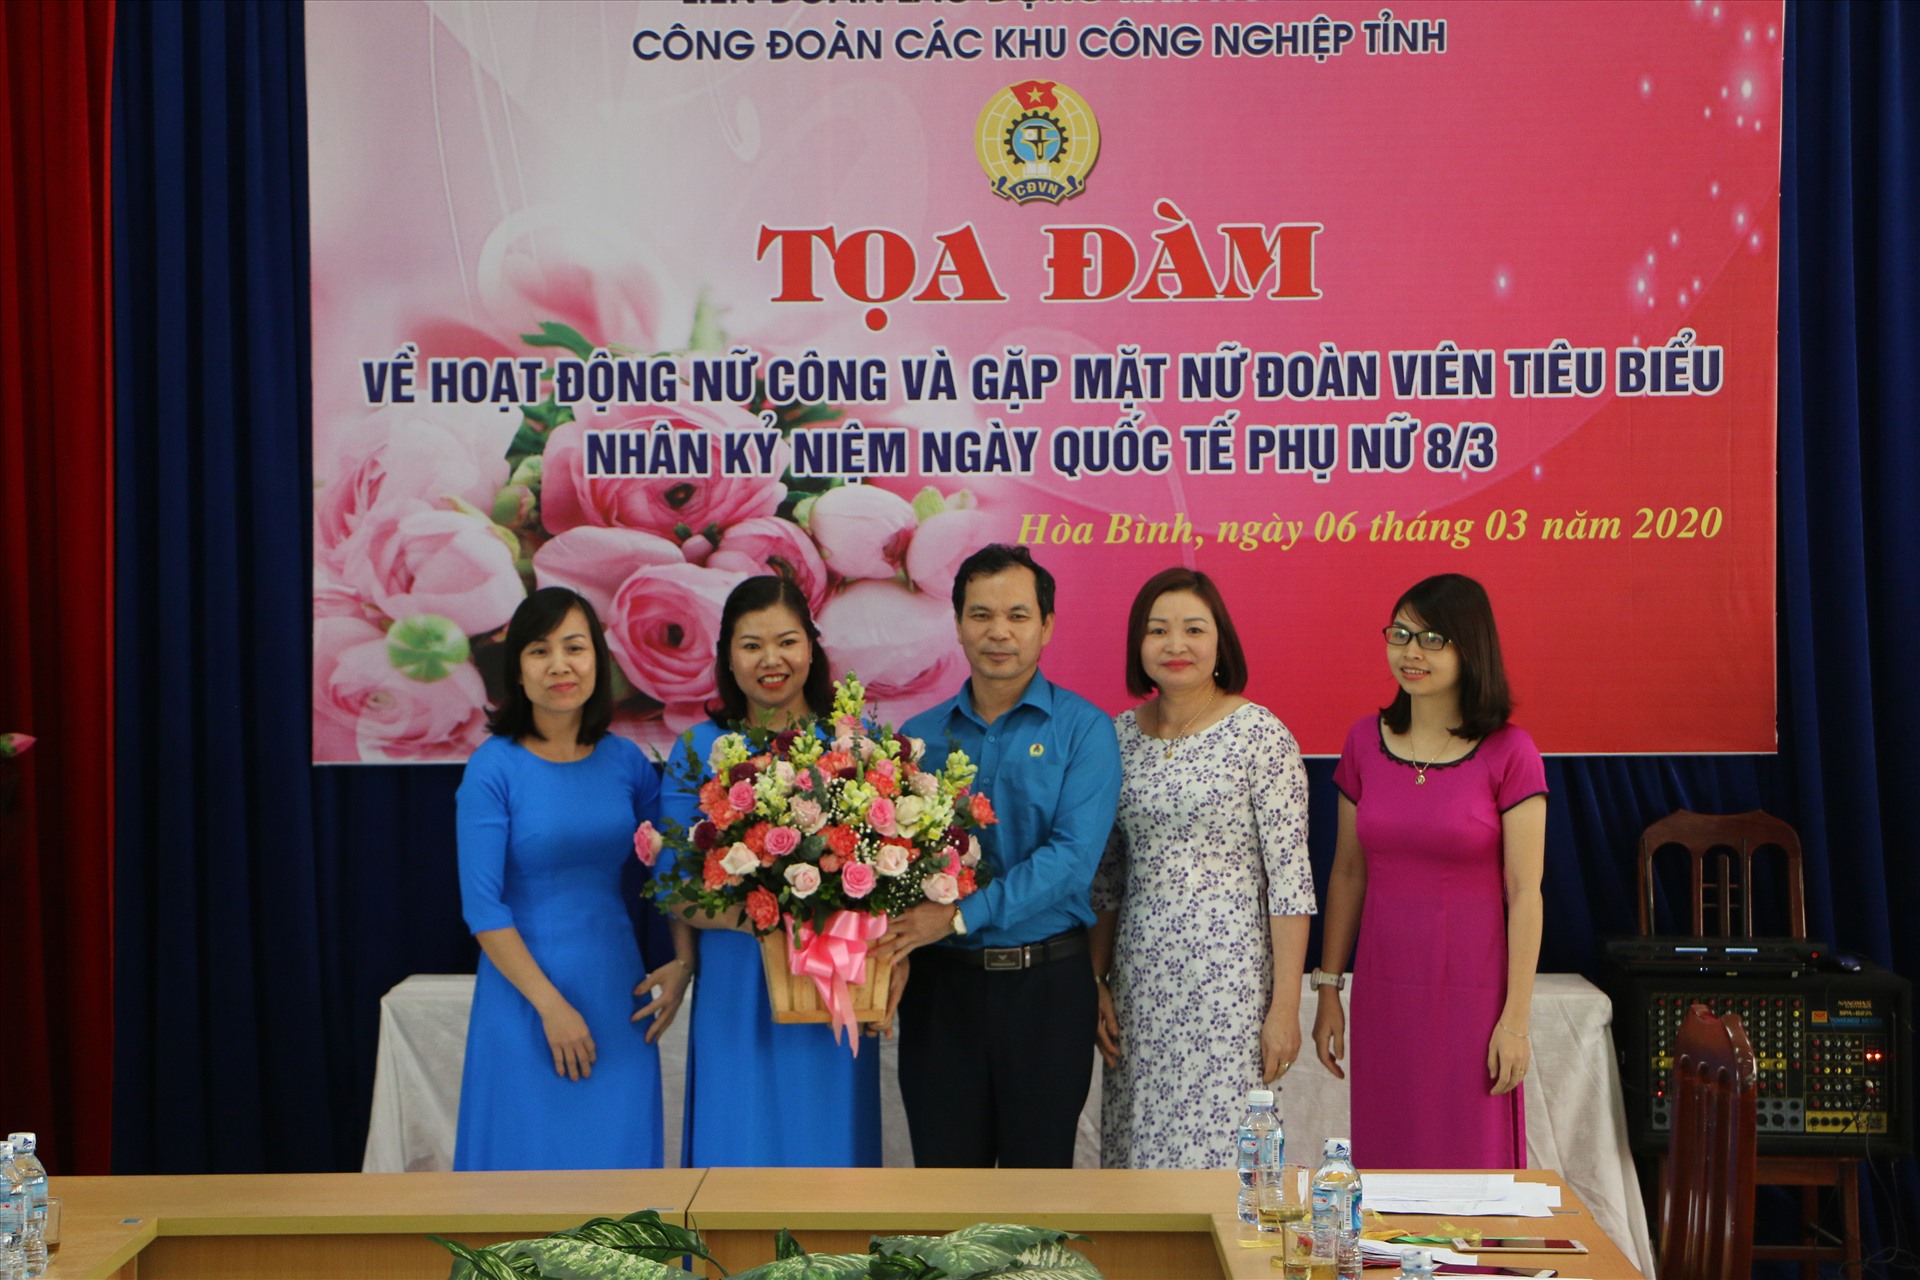 Đồng chí Nguyễn Mạnh Cương- Chủ tịch Liên đoàn Lao động tỉnh Hòa Bình tặng hoa tới các chị em tại buổi tọa đàm.